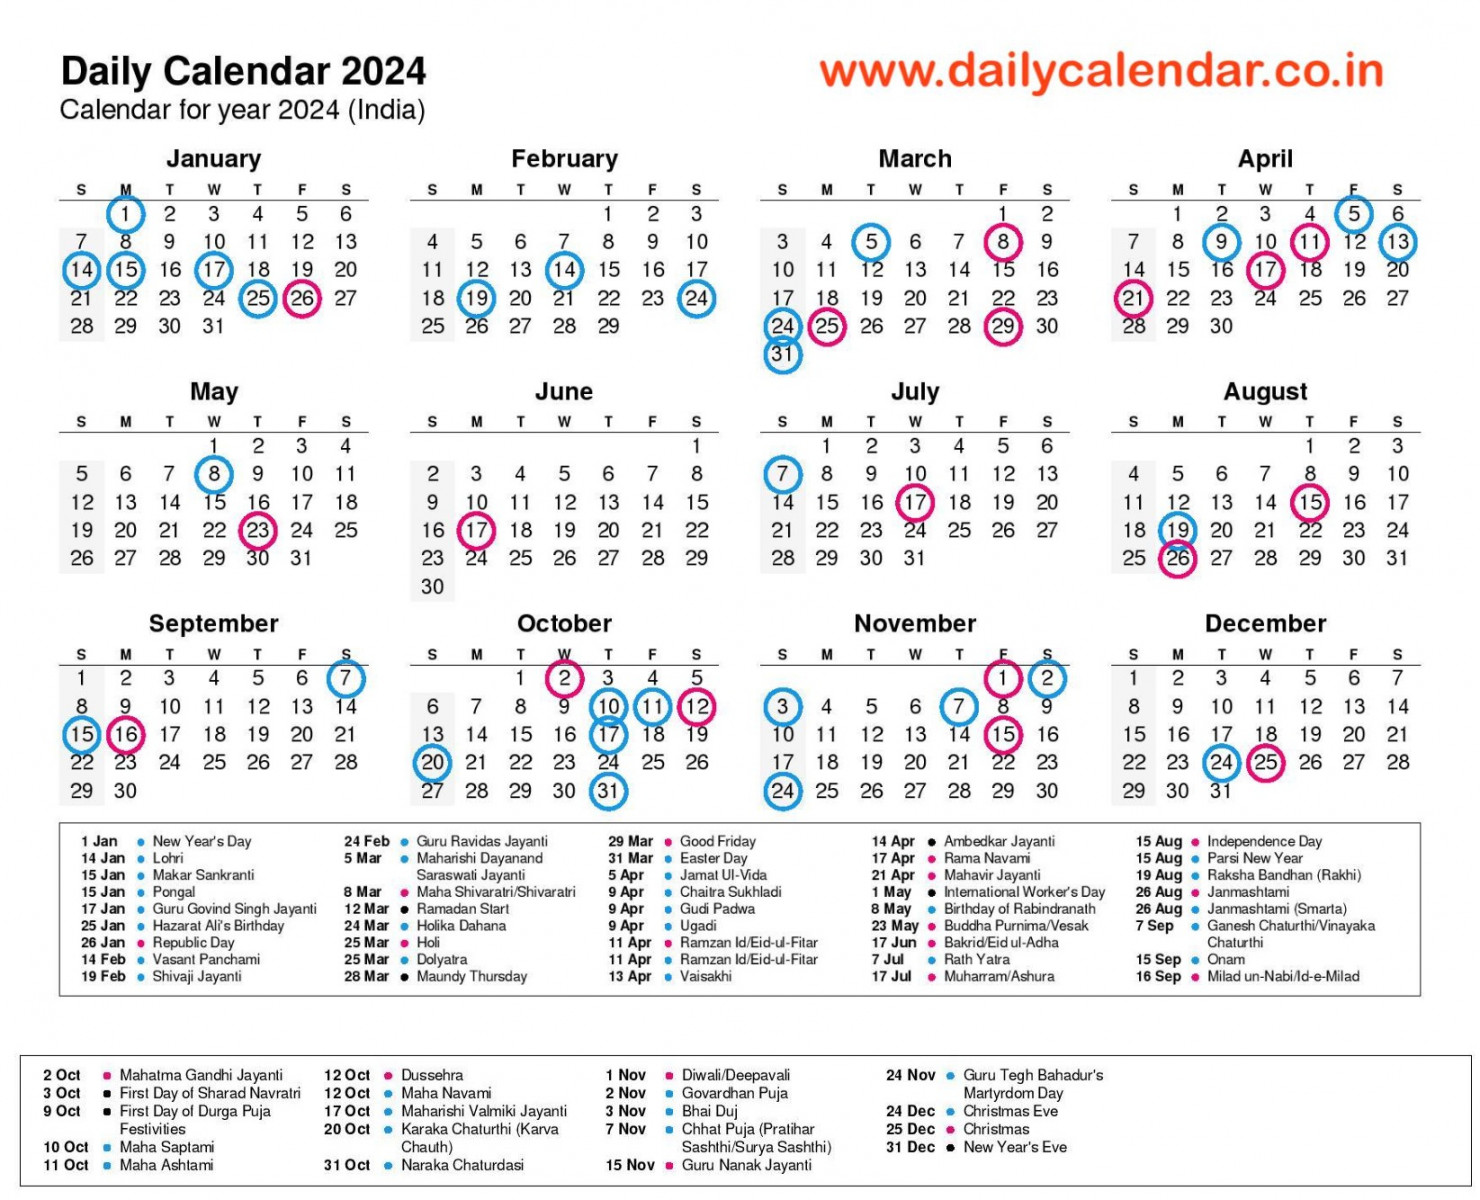 daily calendar with holidays govt tamil telugu odia pdf 1